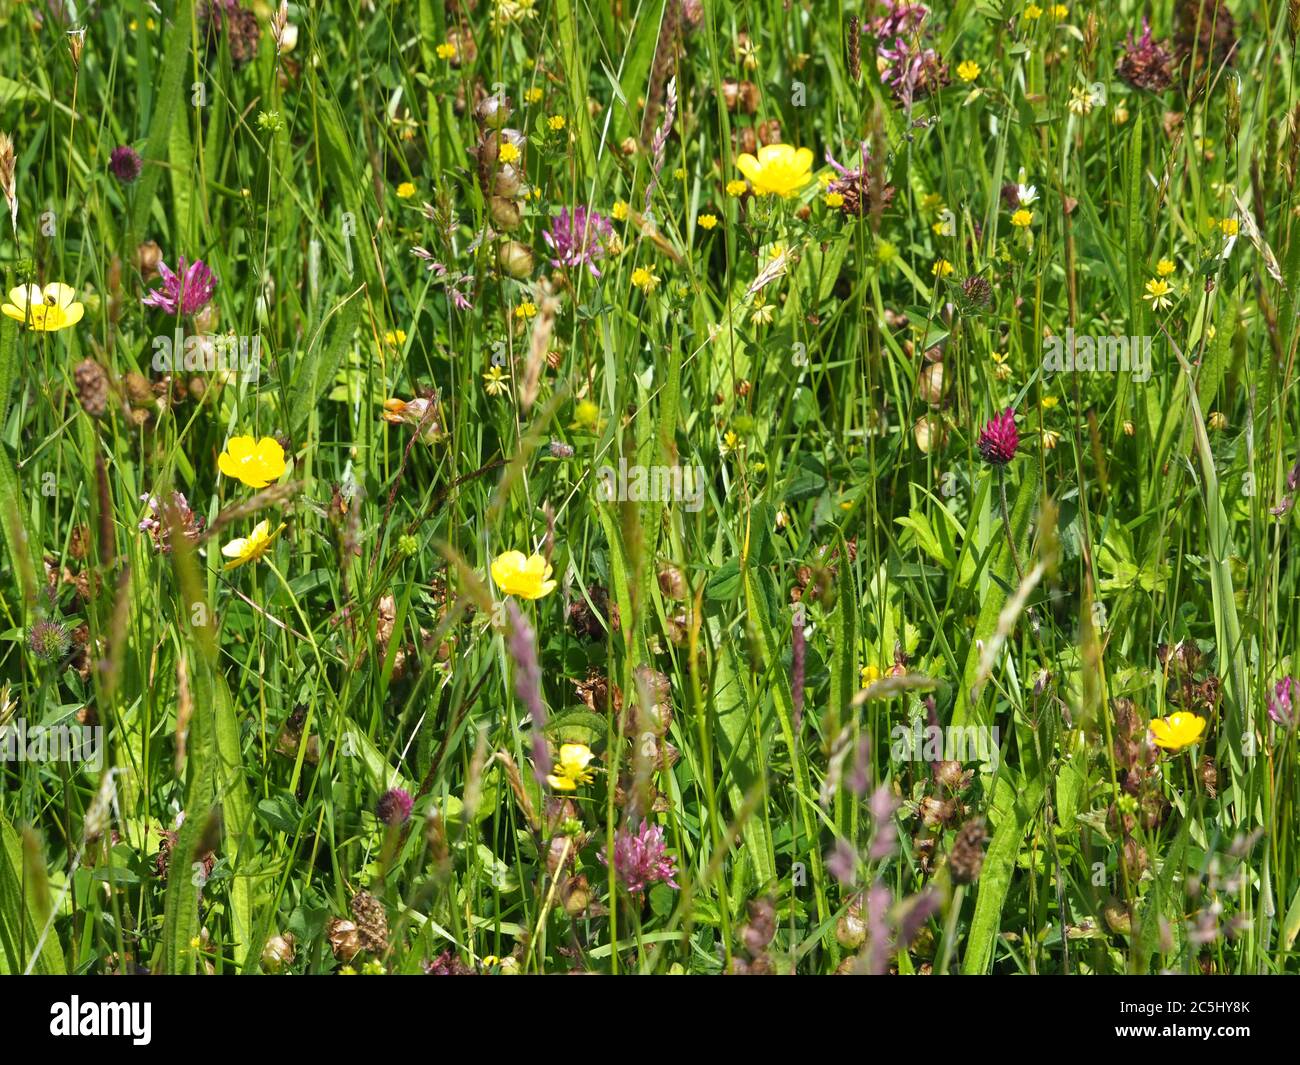 Wild flowers in a grassy meadow, near to Aberystwyth, Ceredigion. Stock Photo